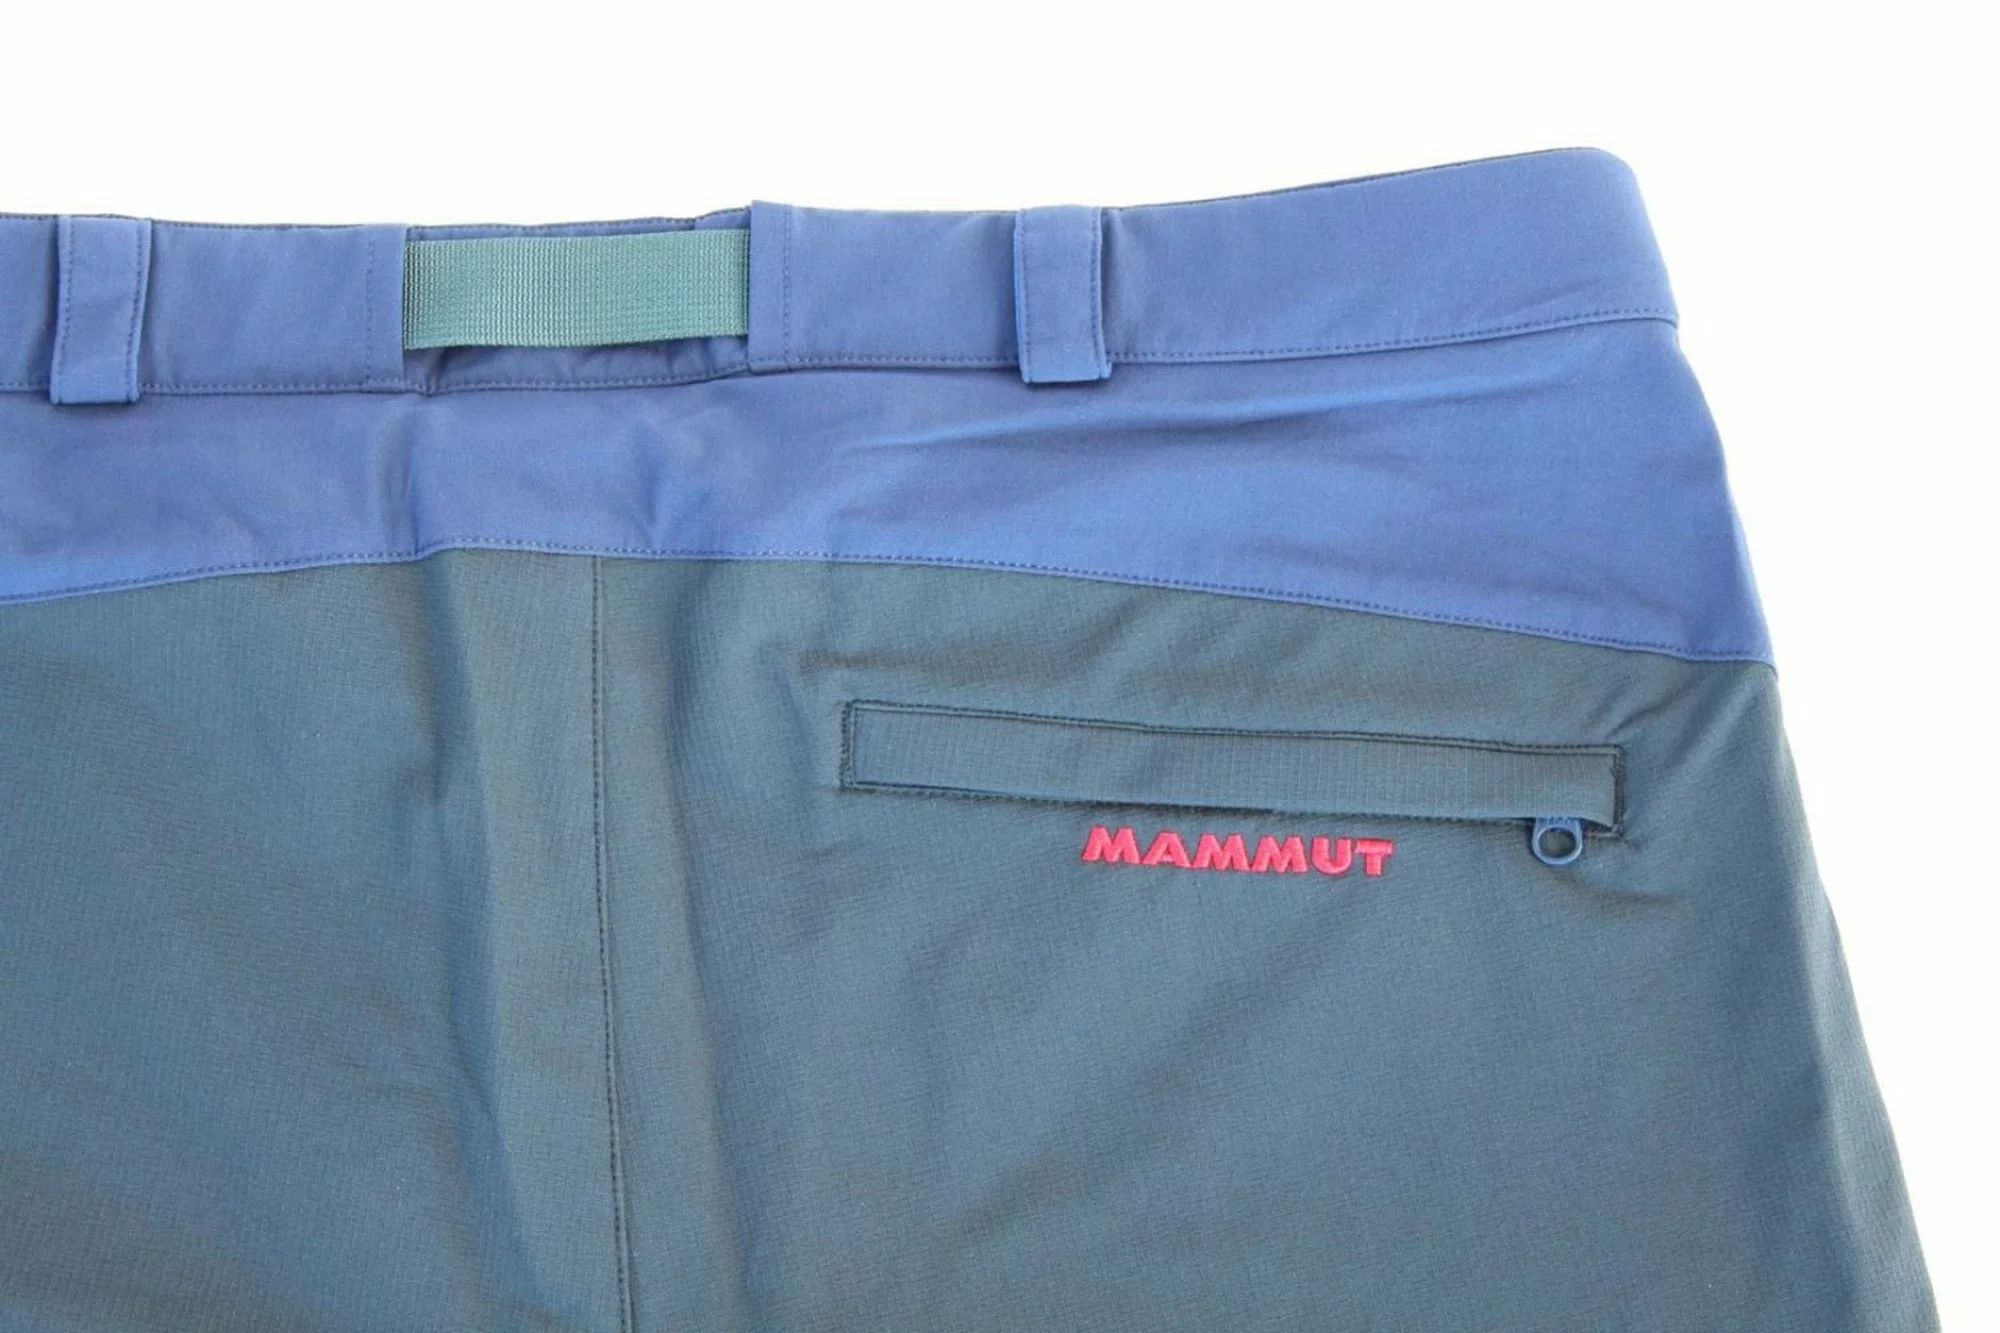 Mammut Courmayeur Advanced Pants